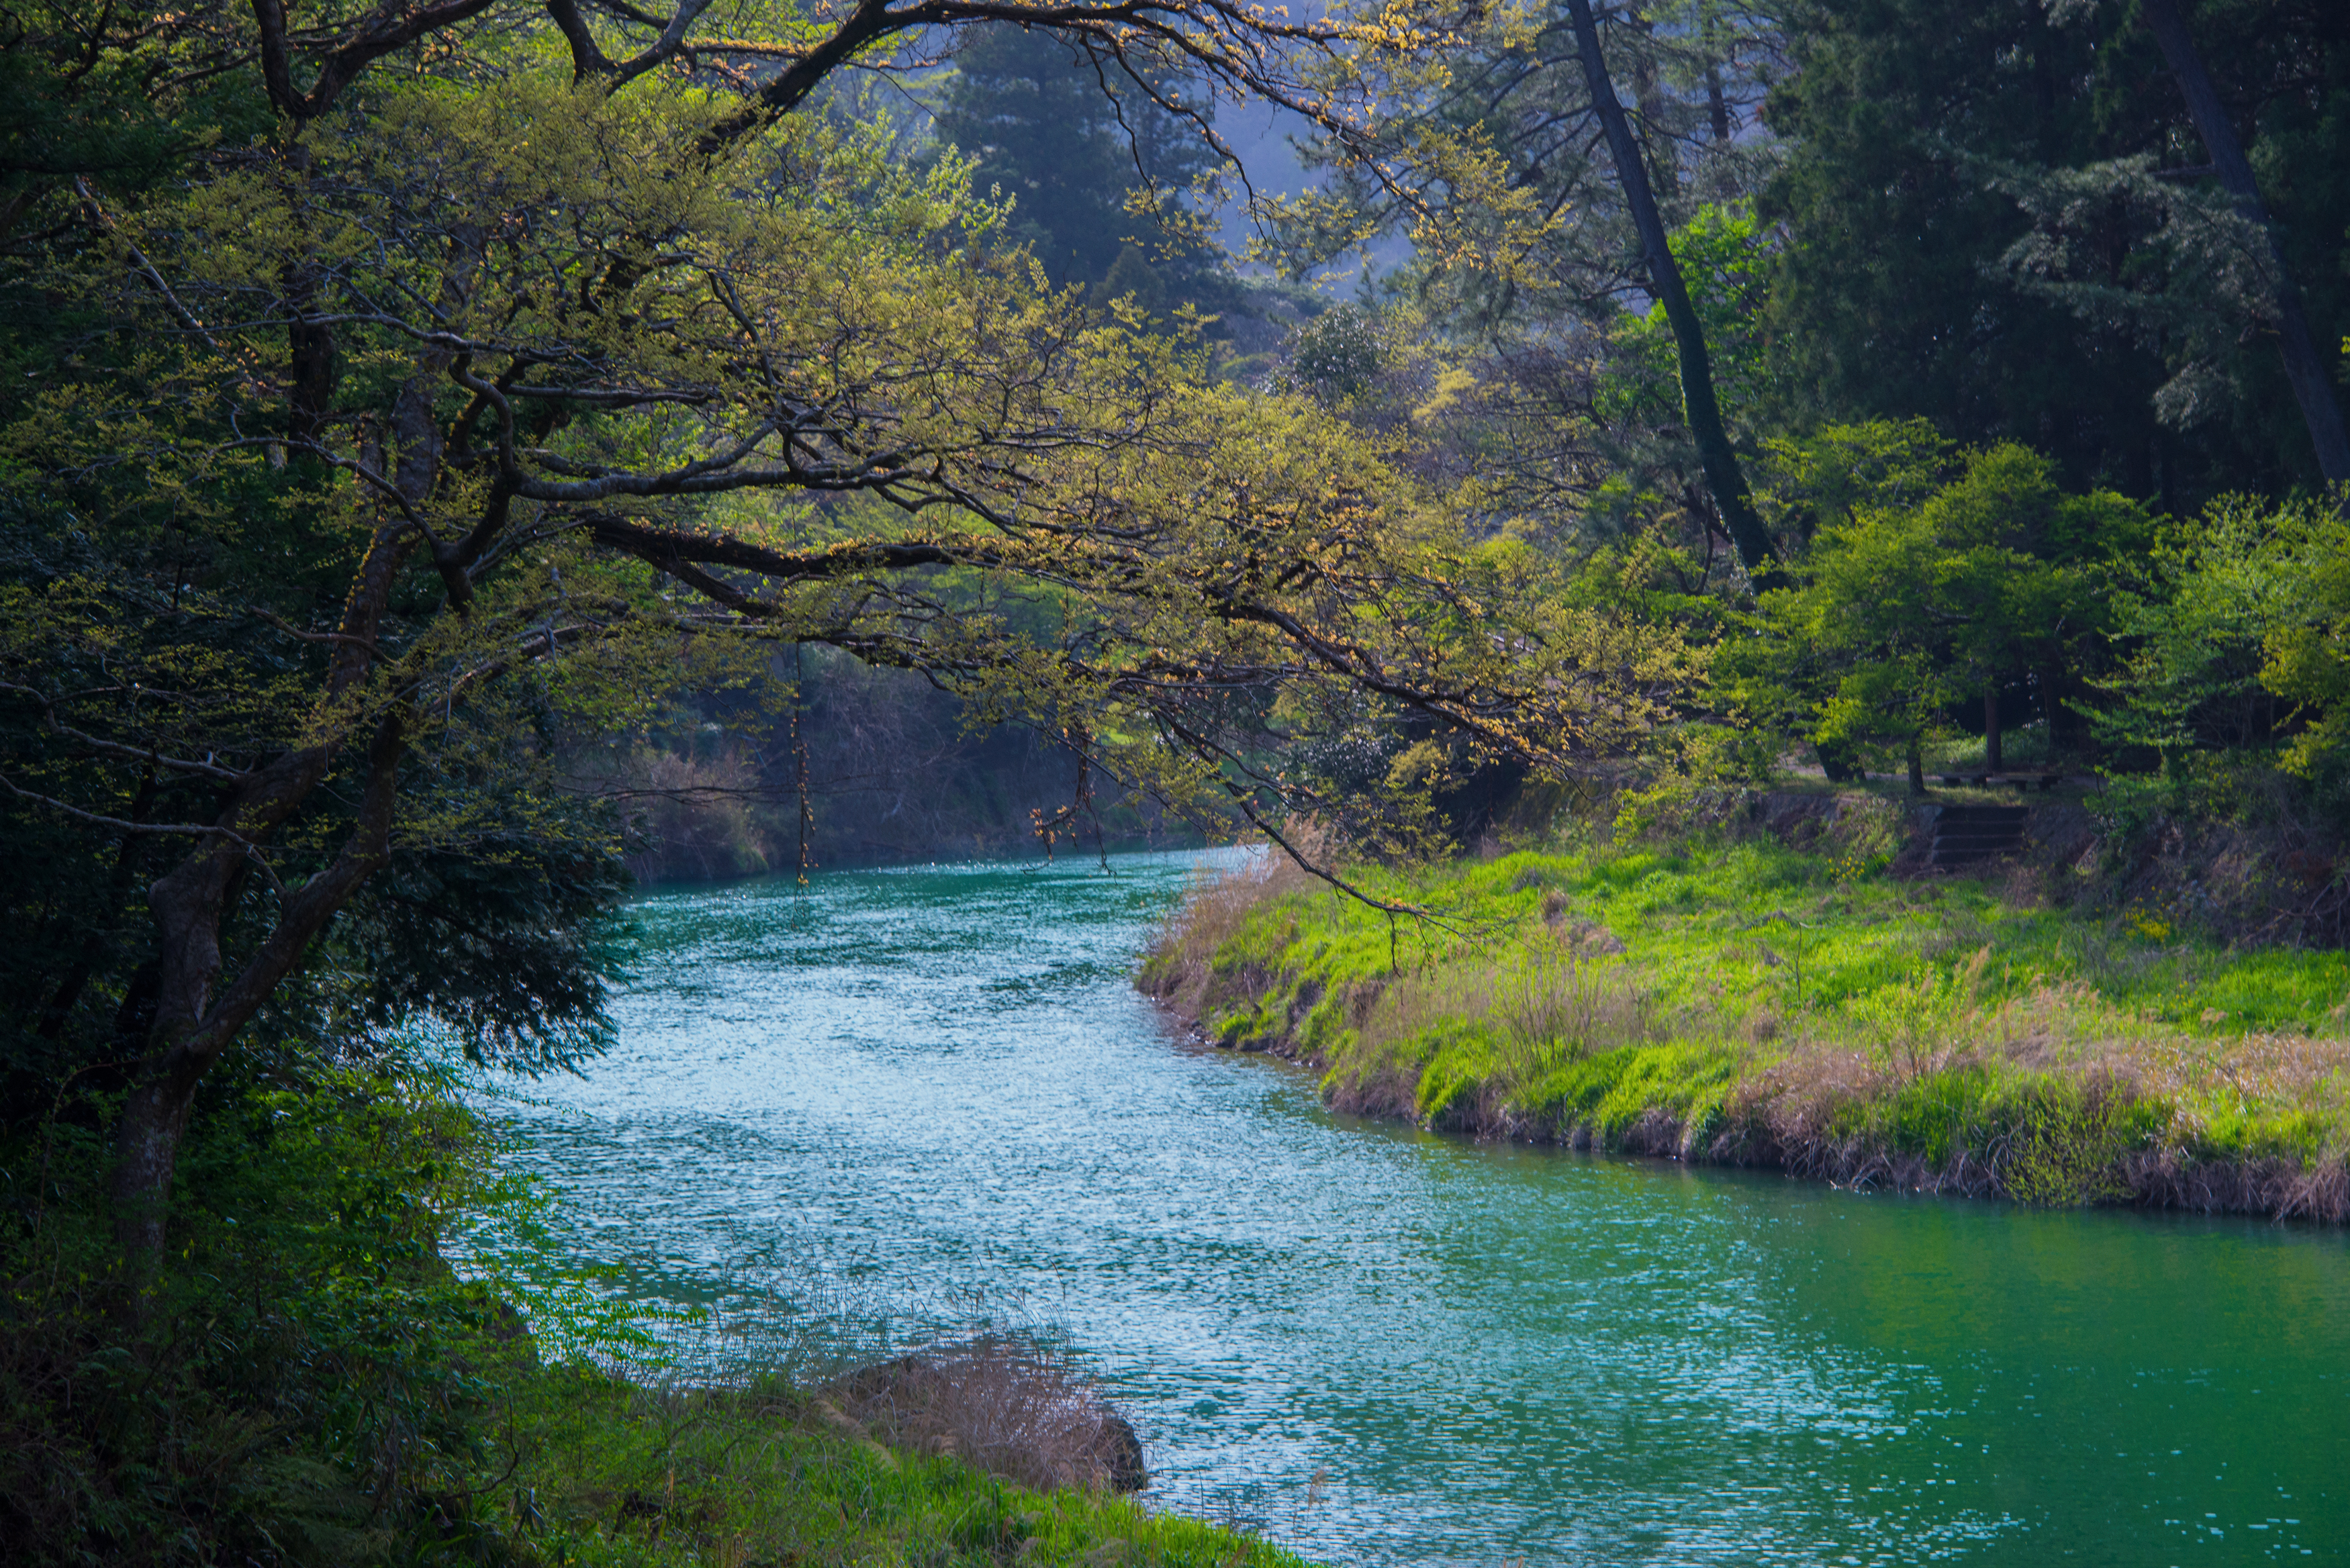 日本の風景写真1 山と川 13年4月撮影 フリー写真素材 カフィネット